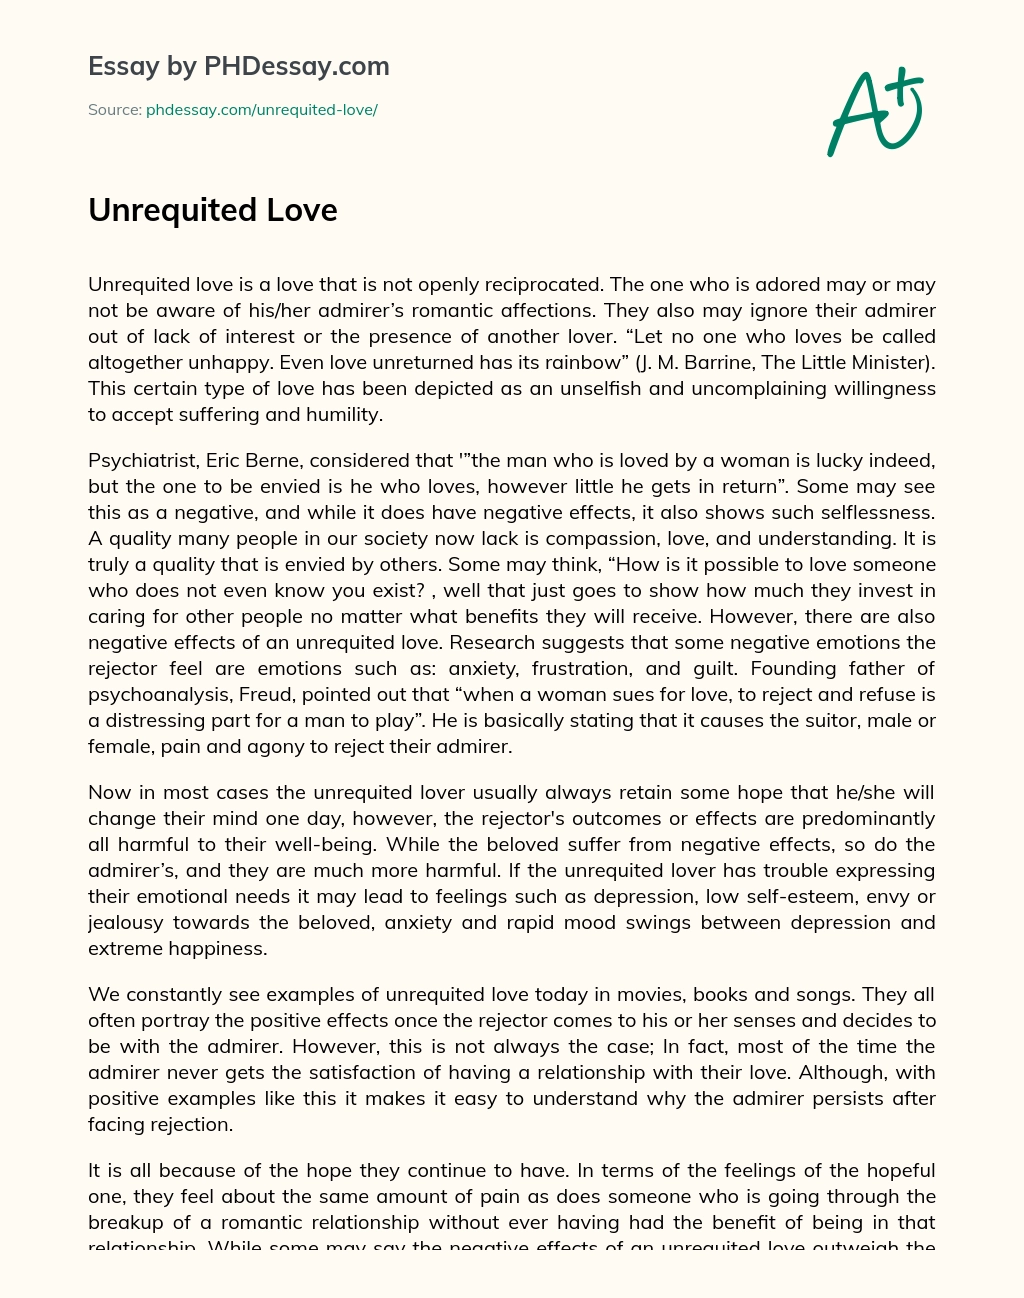 Unrequited Love essay